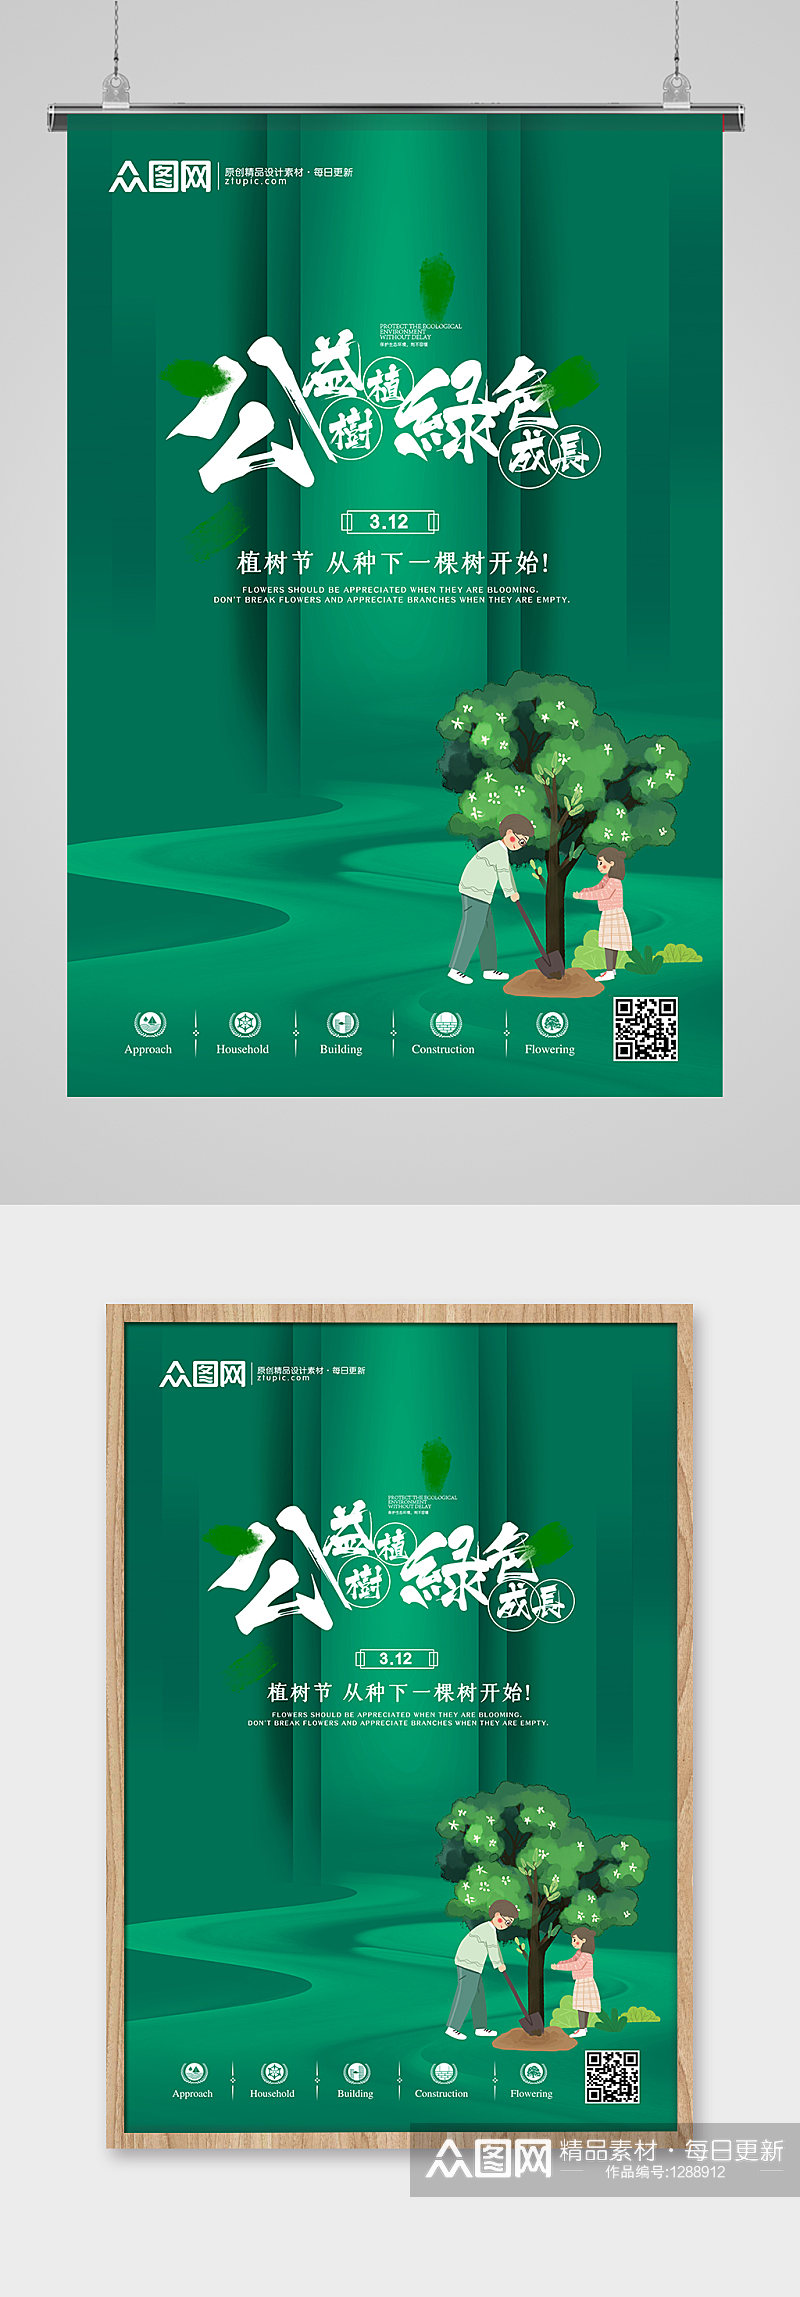 创意绿色公益植树节宣传海报素材